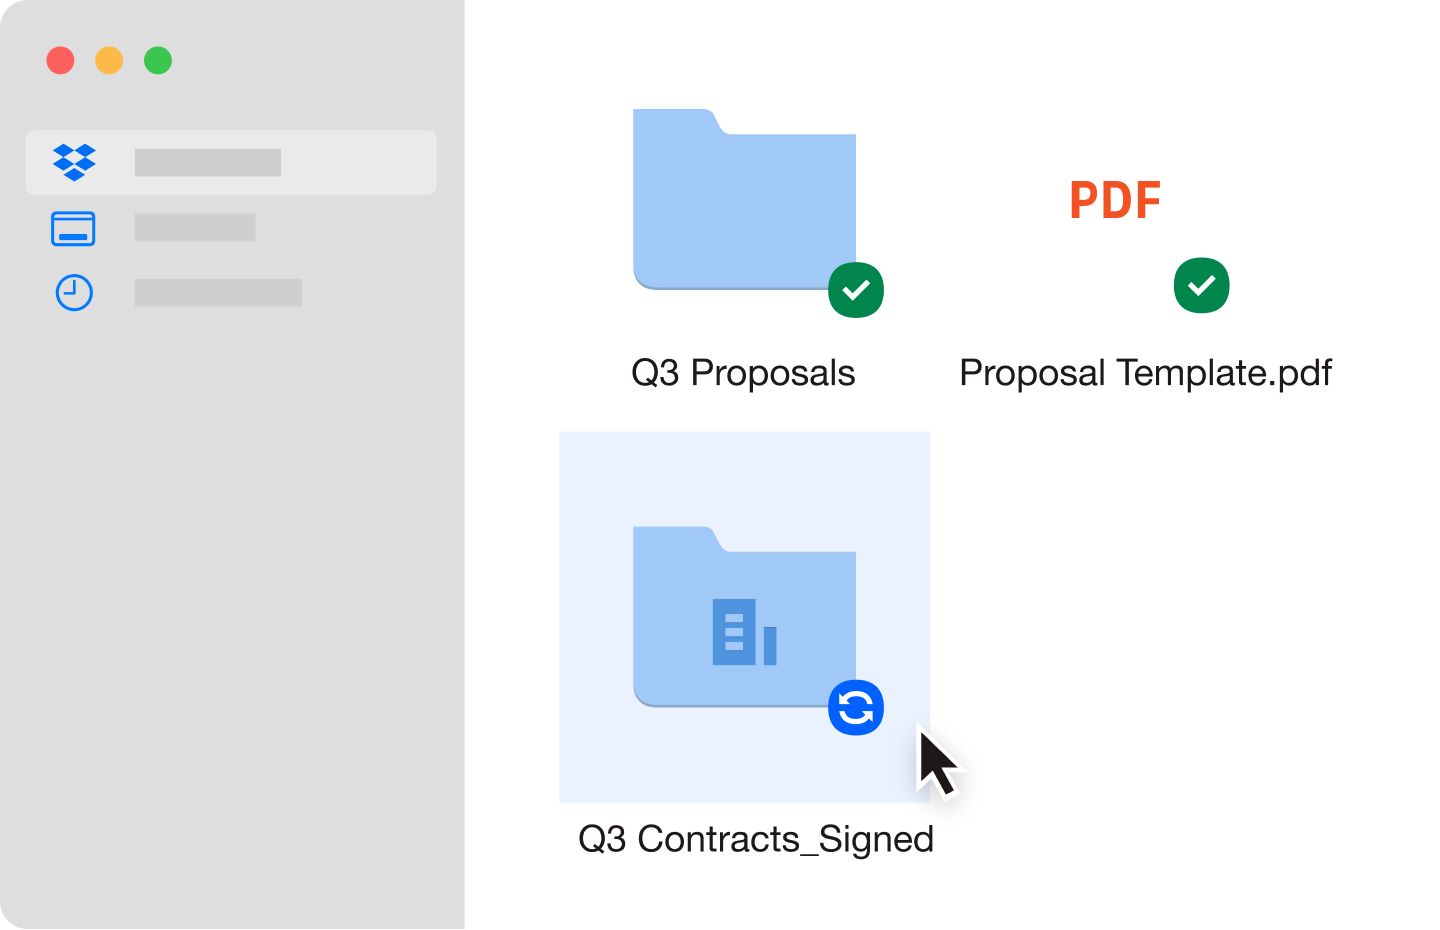 โฟลเดอร์ไฟล์สีน้ำเงินสองโฟลเดอร์และไฟล์ PDF ที่ซิงค์ไว้ในบัญชี Dropbox